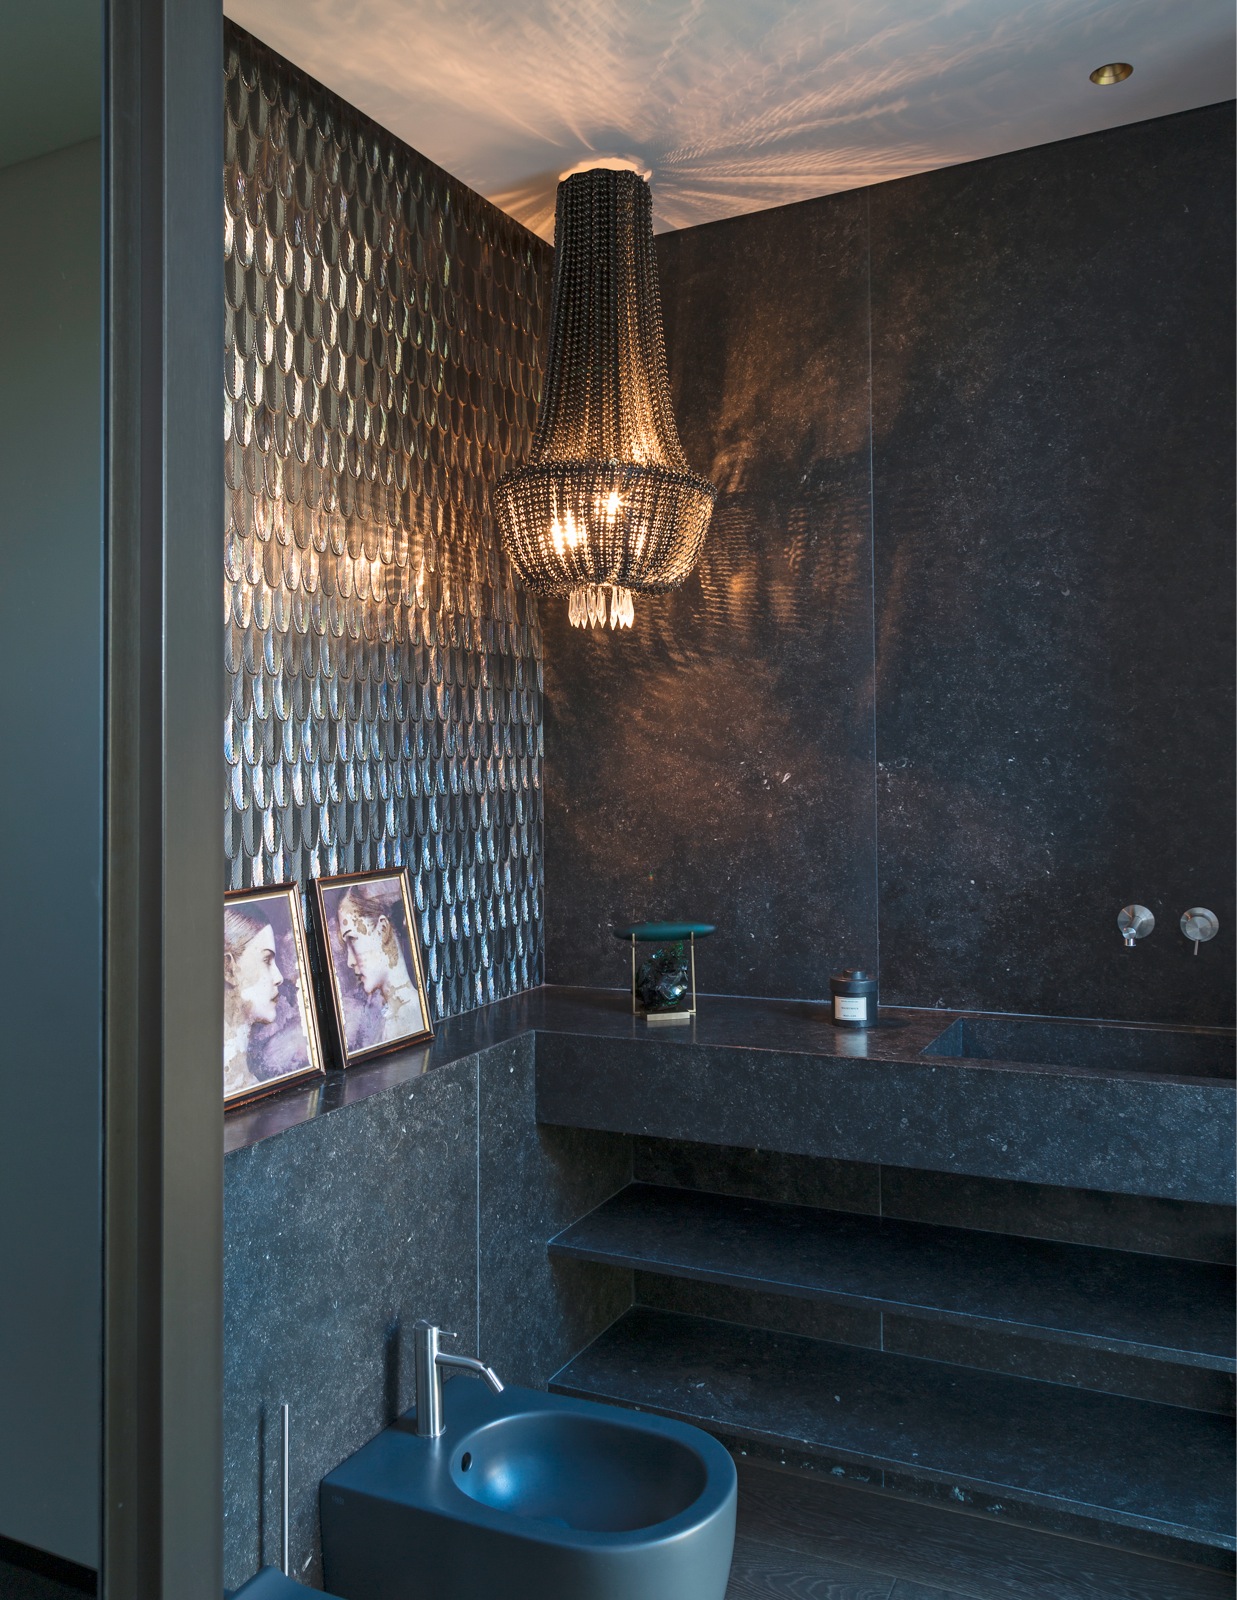 Thay vì sử dụng đèn chùm tại vị trí bồn tắm như thường thấy, NTK Eleanor Cavalli đã lựa chọn chiếc đèn chùm pha lê màu đen kết hợp ánh sáng vàng ấm ngay tại nhà vệ sinh, tạo nên một phong cách ấn tượng cho chủ sở hữu là quý ông độc thân.